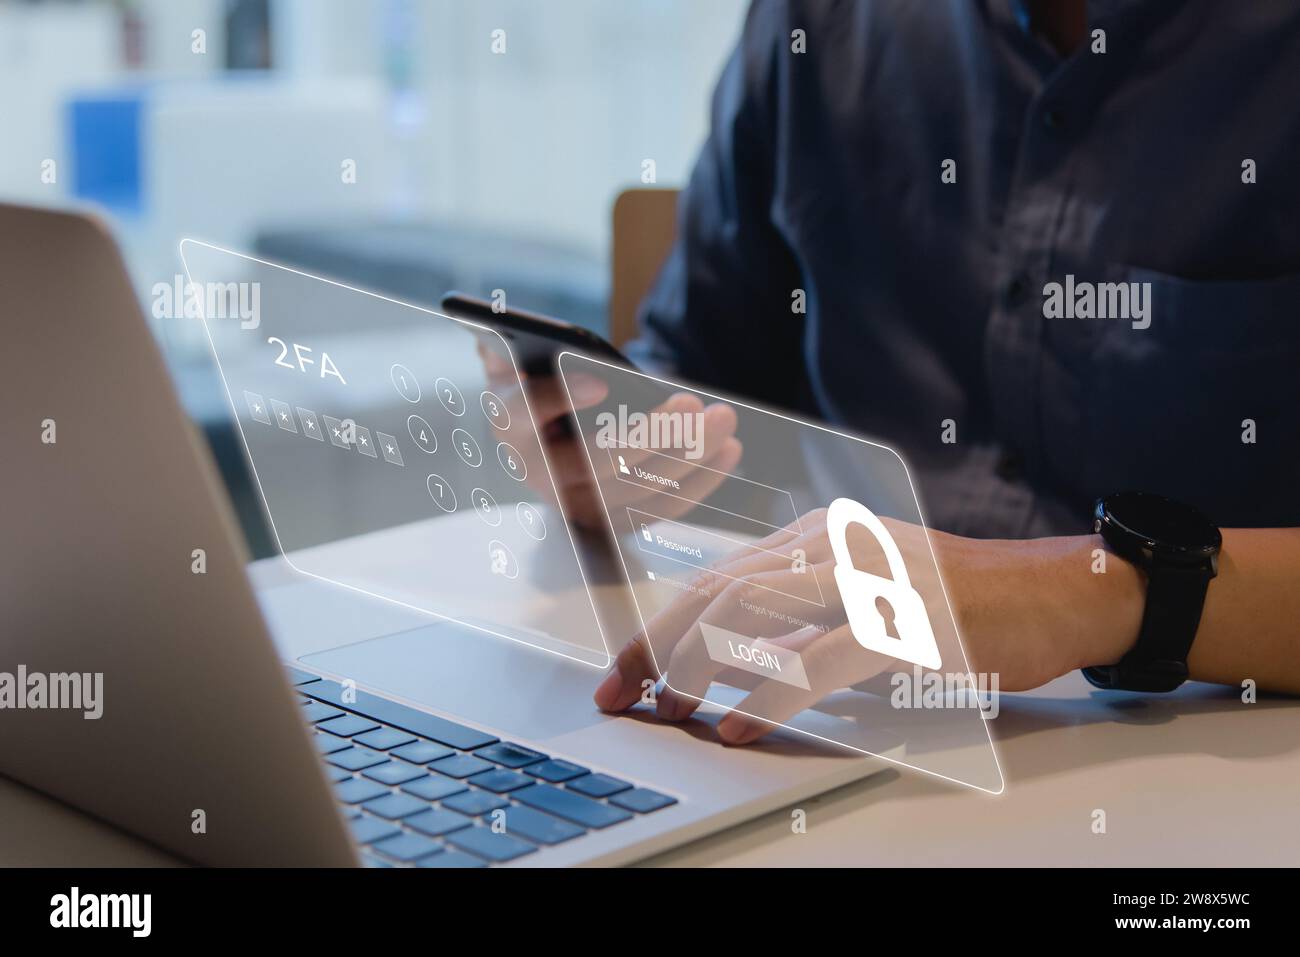 Amélioration de la cybersécurité avec l'authentification à deux facteurs 2FA, la sécurité de connexion, la protection de l'ID utilisateur et le cryptage pour contrecarrer les cyber-pirates. Banque D'Images